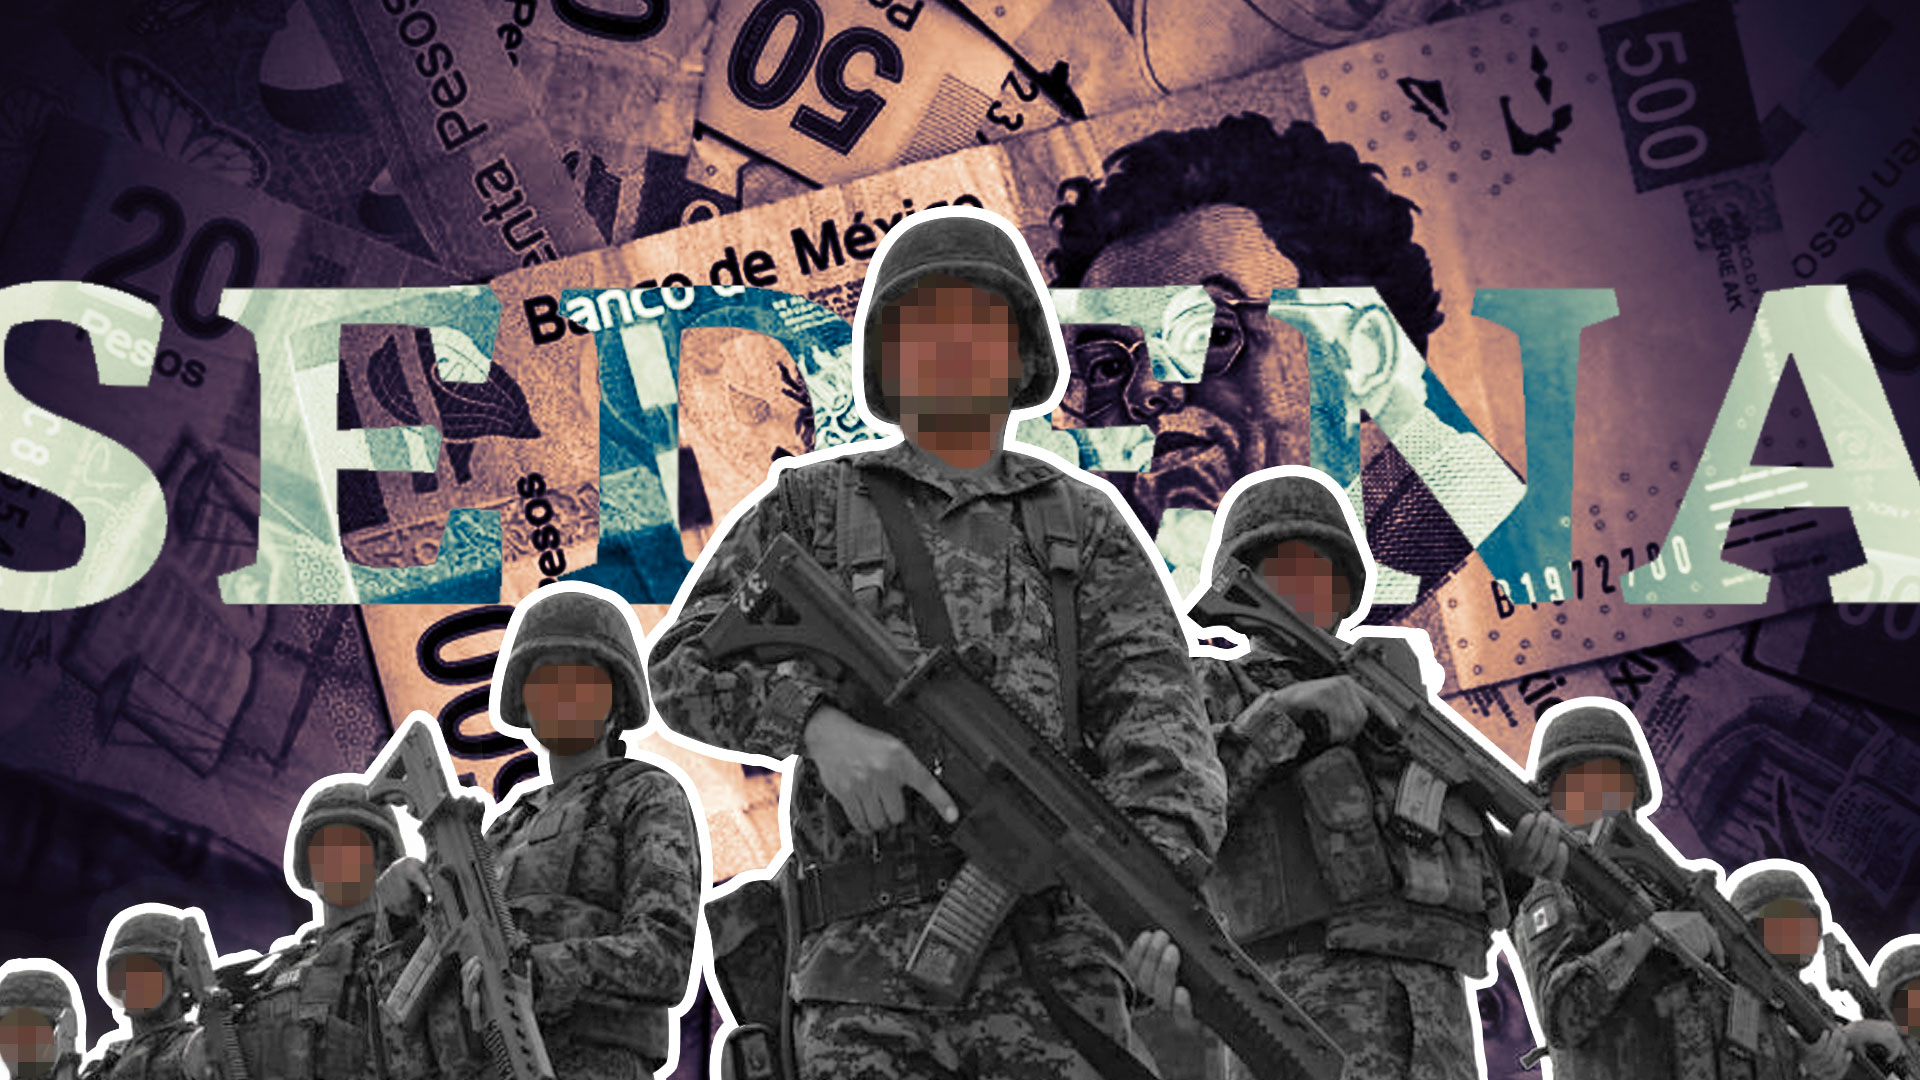 Documentos filtrados por el colectivo Guacamaya revelaron una serie de correos entre un mimbro del Ejército y un agente de la DEA
(Foto especial)